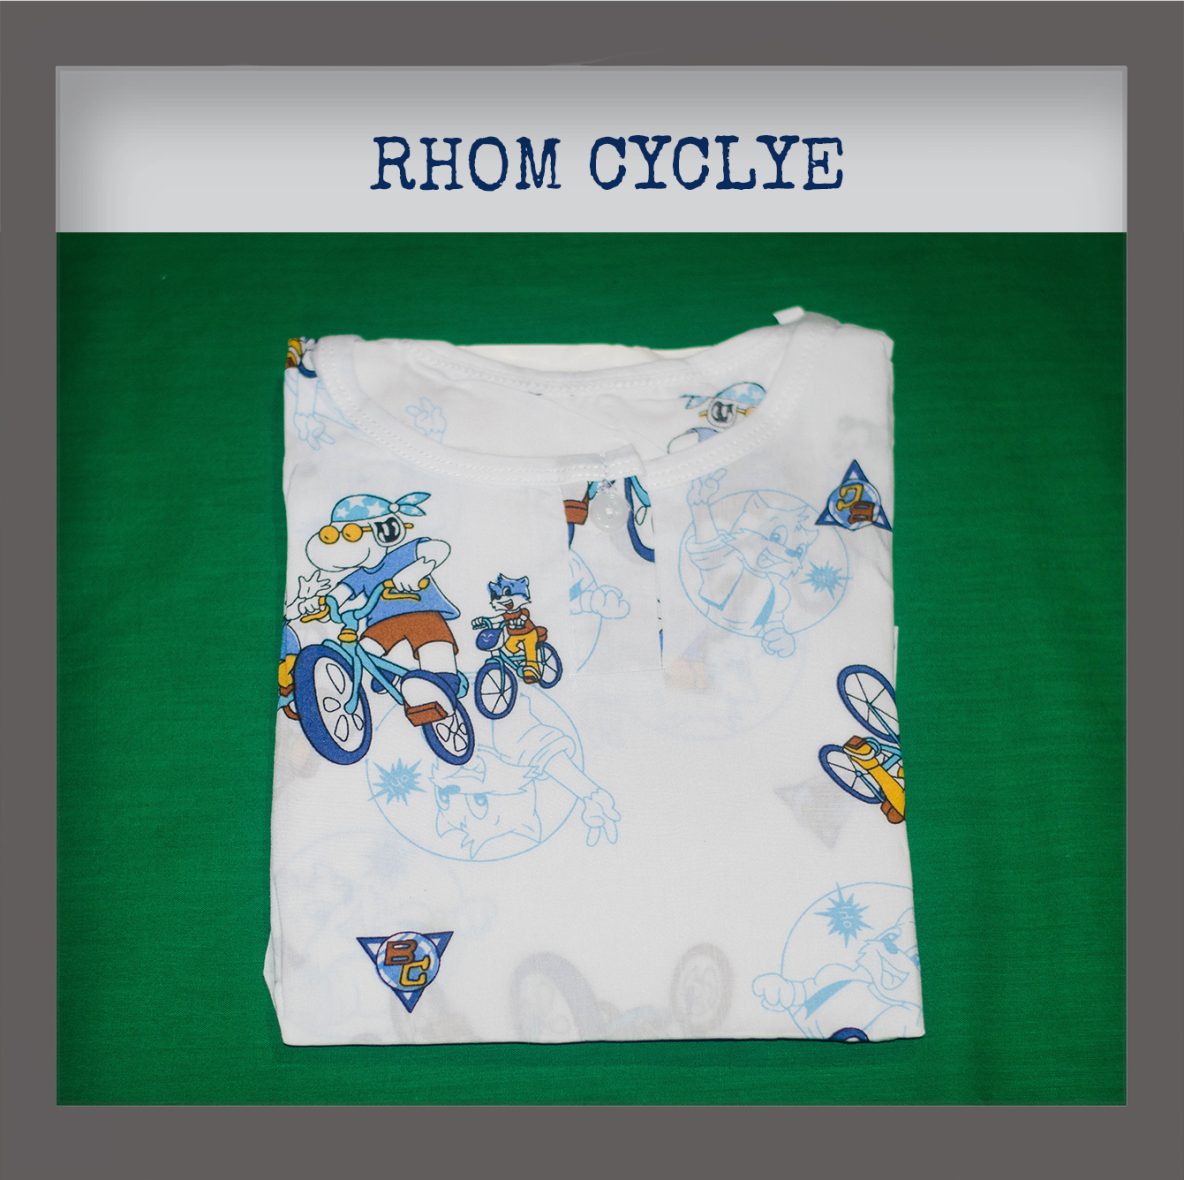 Rhom Cyclist